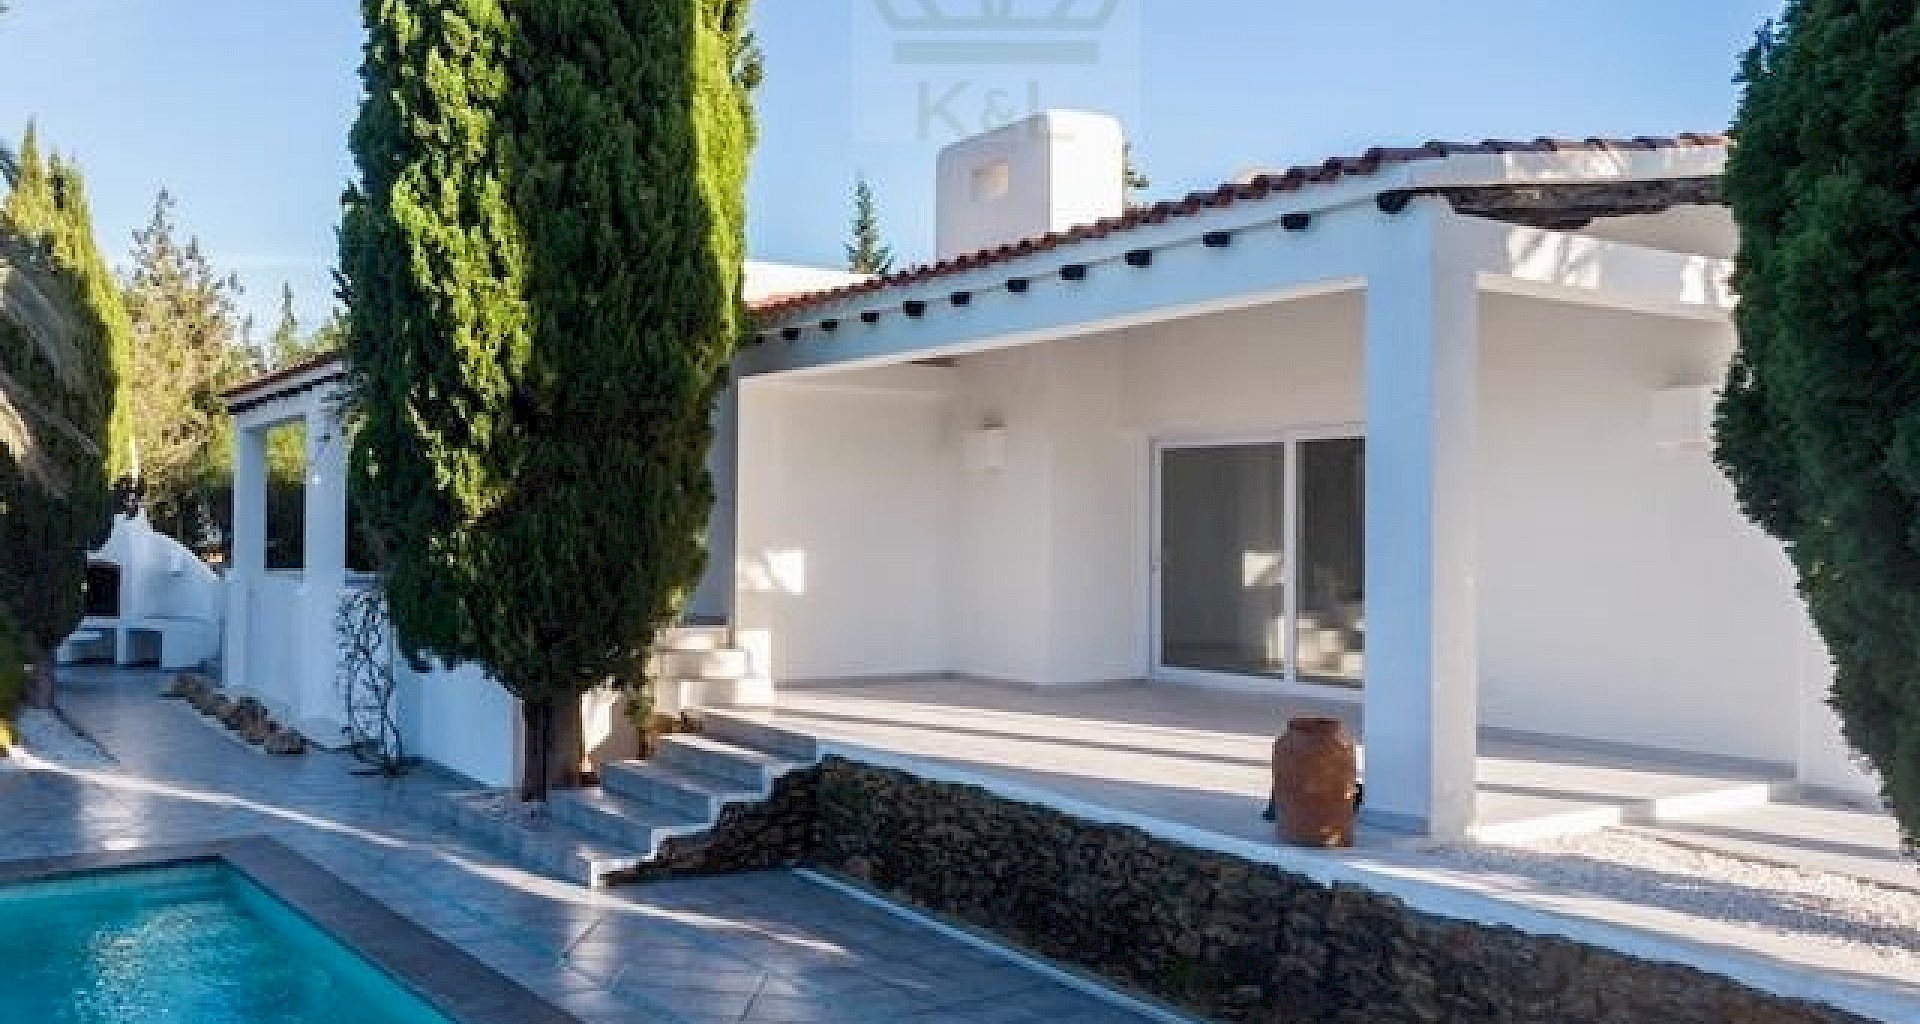 KROHN & LUEDEMANN Komplett renoviertes Haus auf Ibiza mit Pool und viel Privatsphäre Benimussa (3)